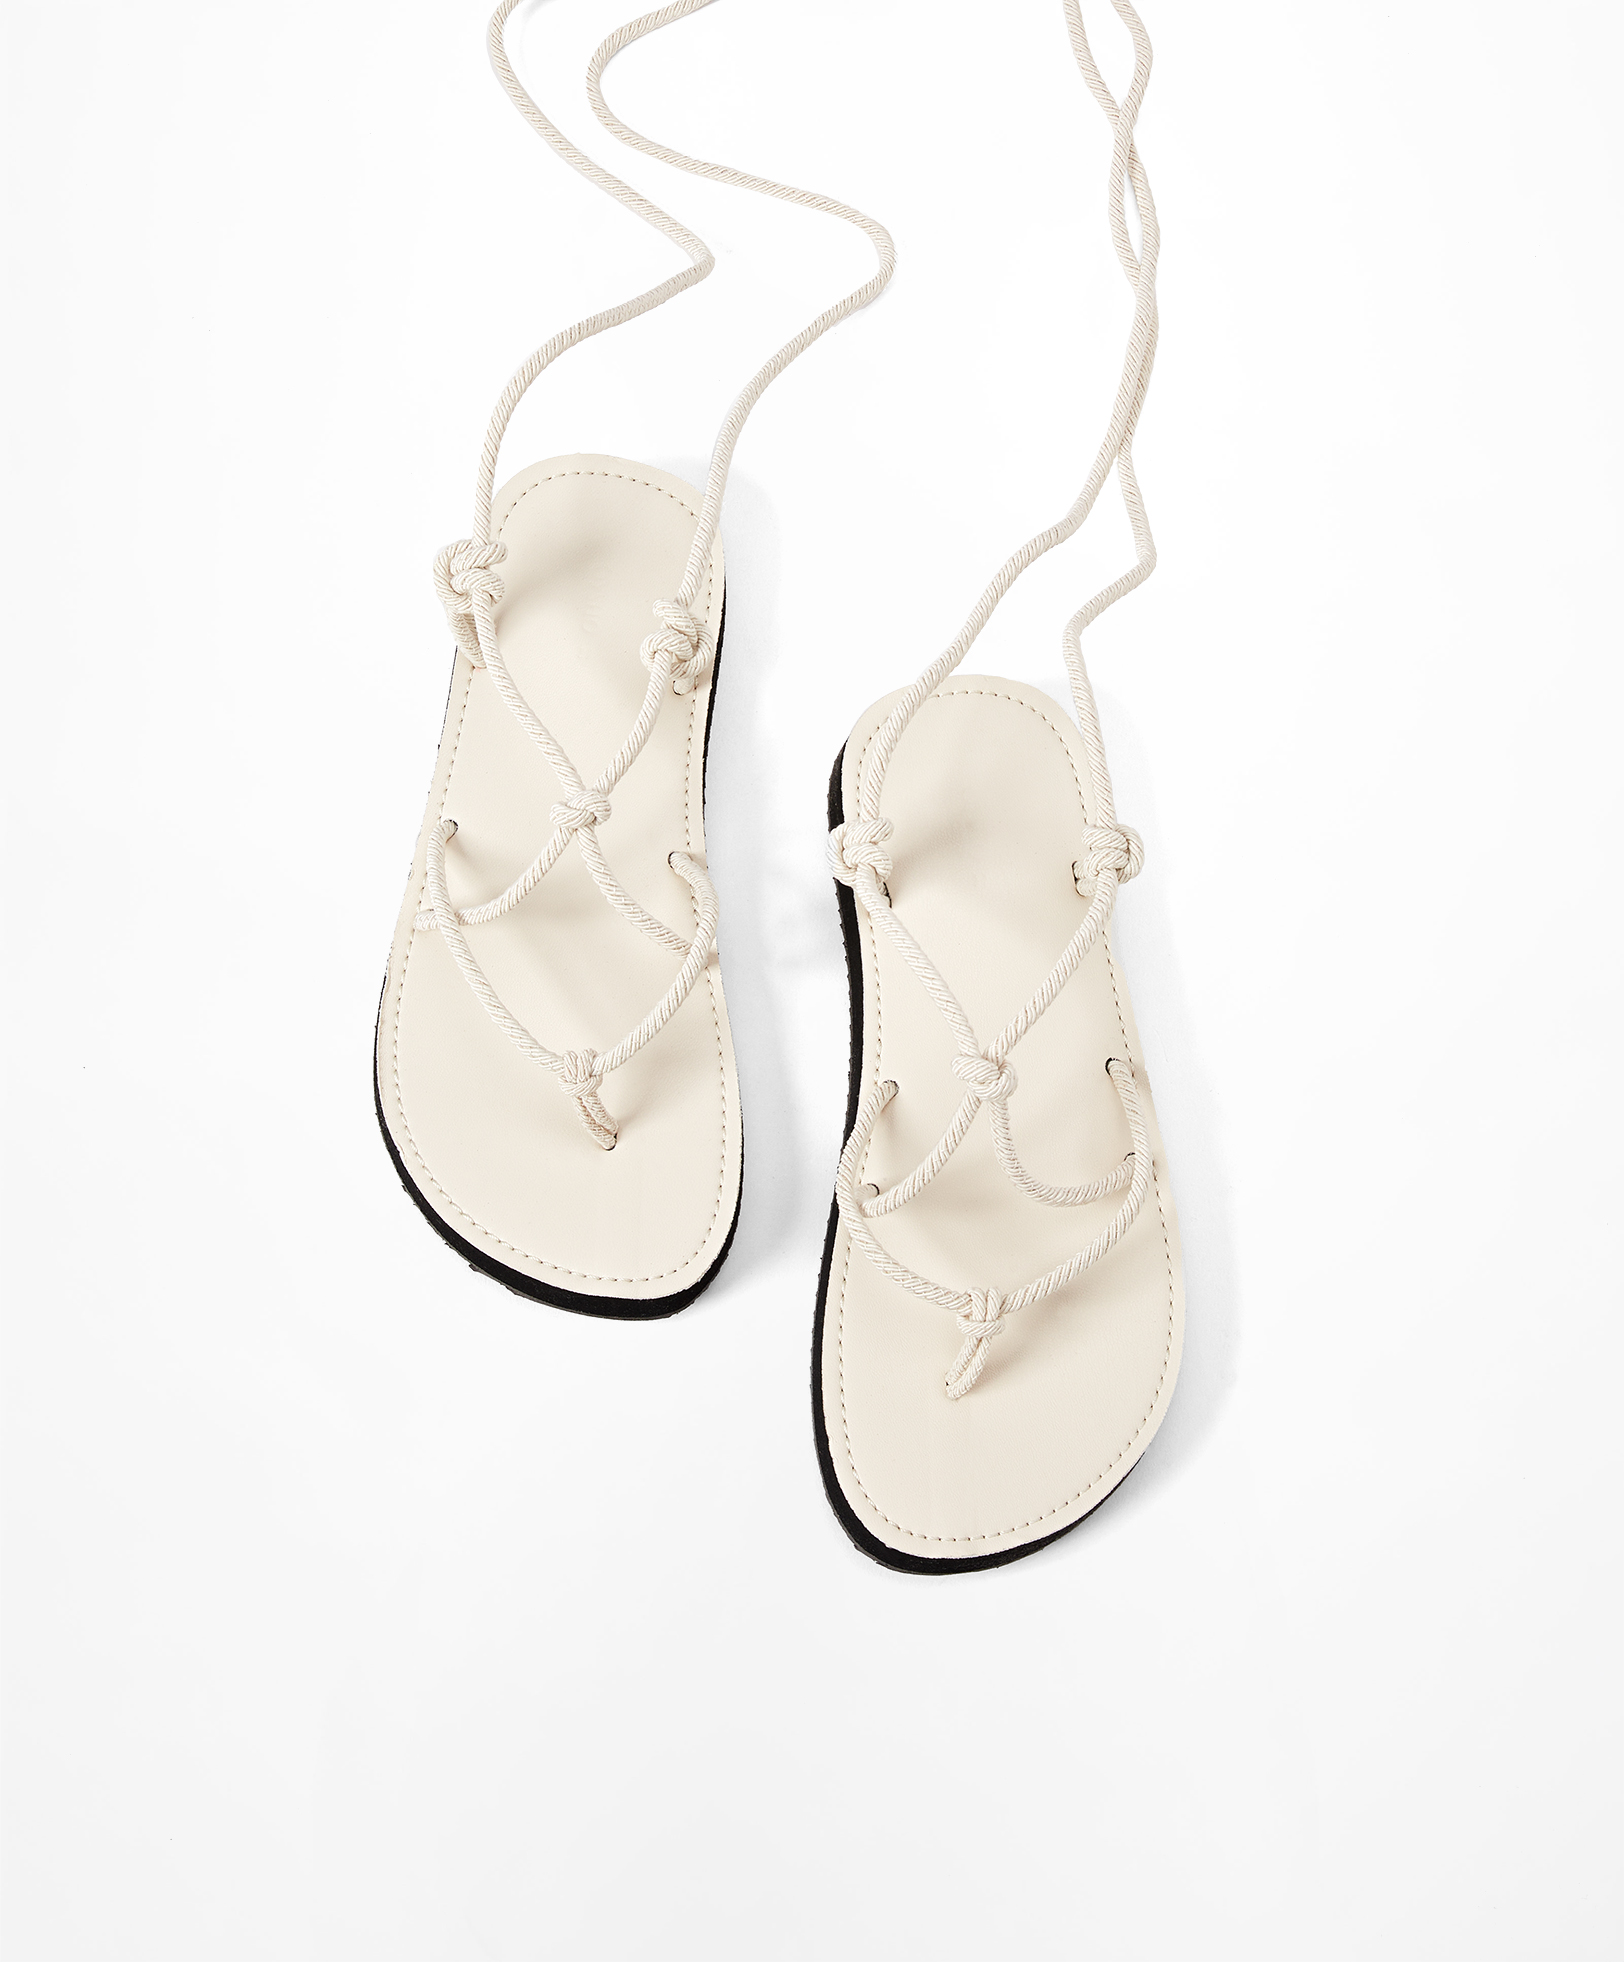 Las sandalias de cuerdas con suela plana de Oysho ideales para esta temporada